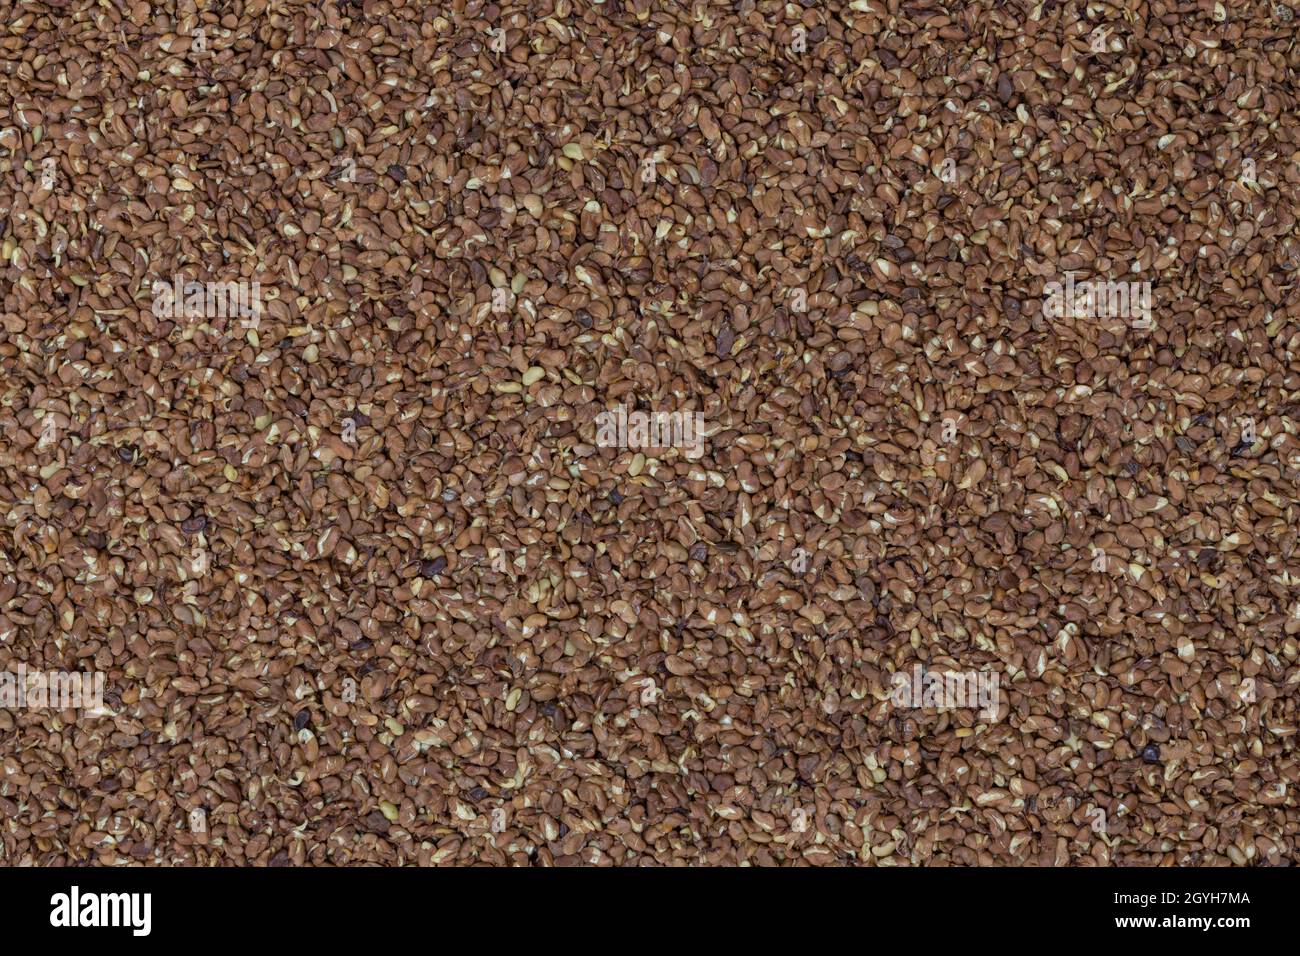 Detalle de alfalfa en marrón. Foto de stock